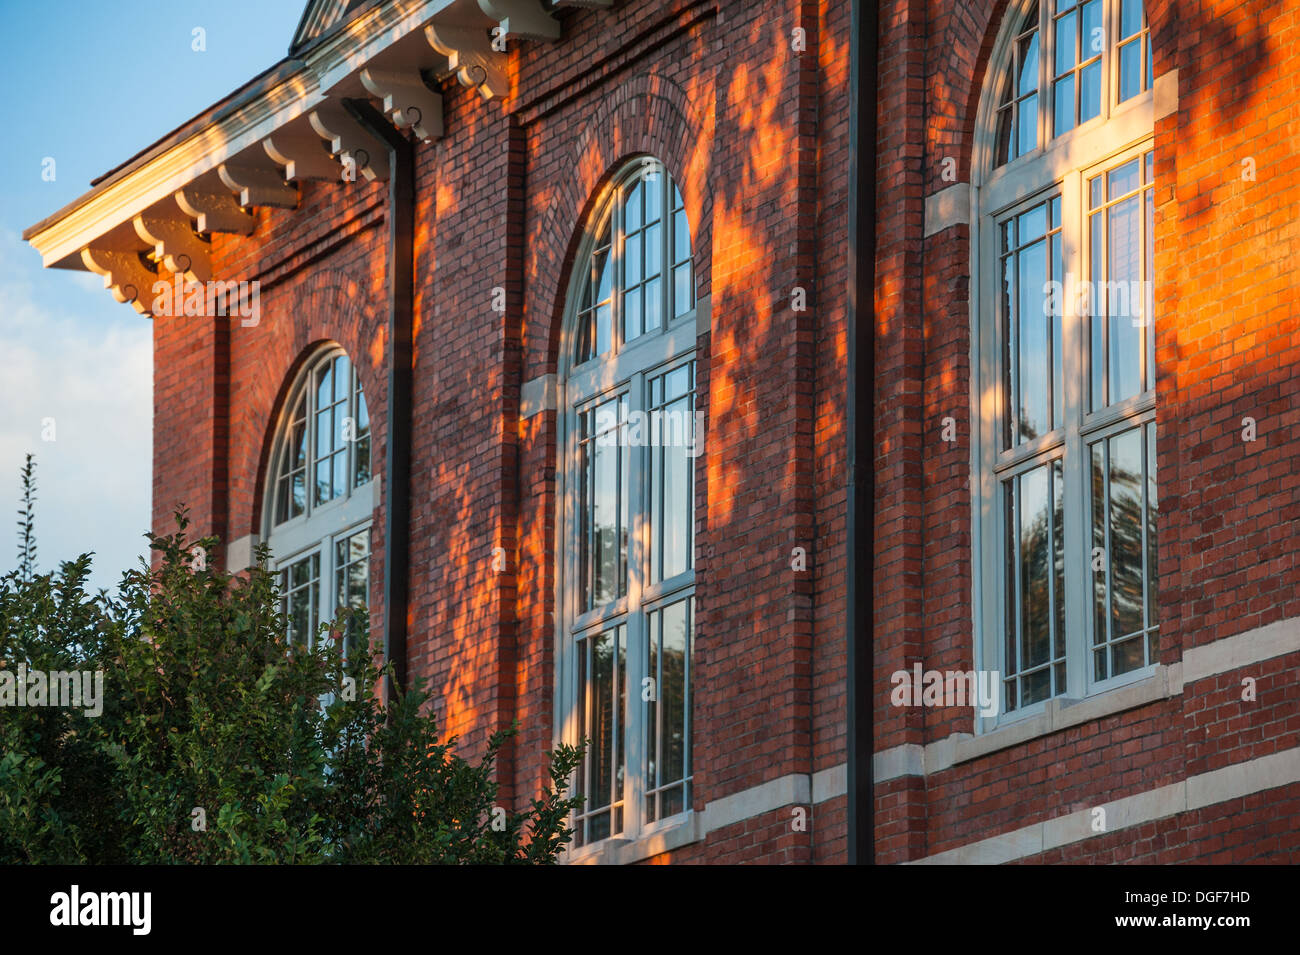 Dappled Sunlight peint la brique et les fenêtres du palais de justice historique Gwinnett de 1885 à Lawrenceville, GA près d'Atlanta. (ÉTATS-UNIS) Banque D'Images